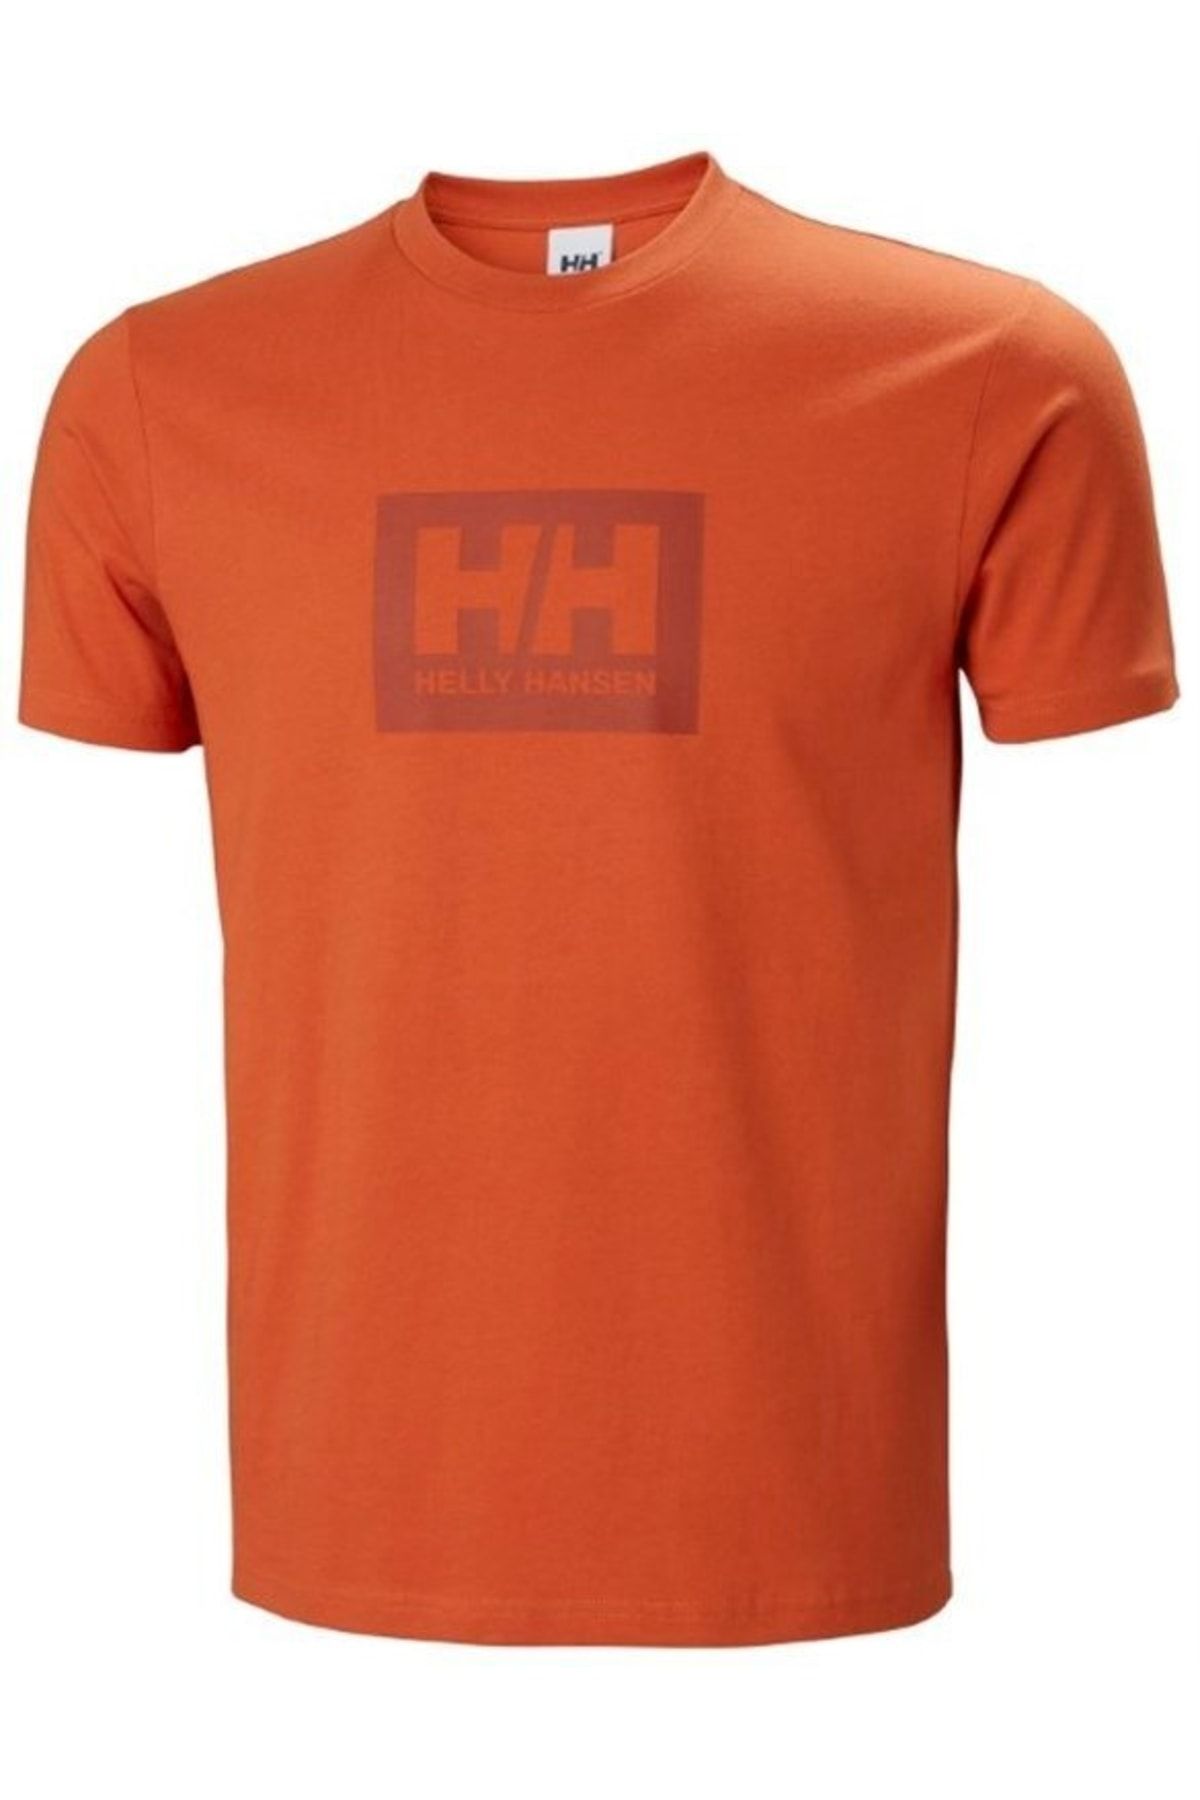 Helly Hansen Hh Box T - Terracotta Erkek T-shirt